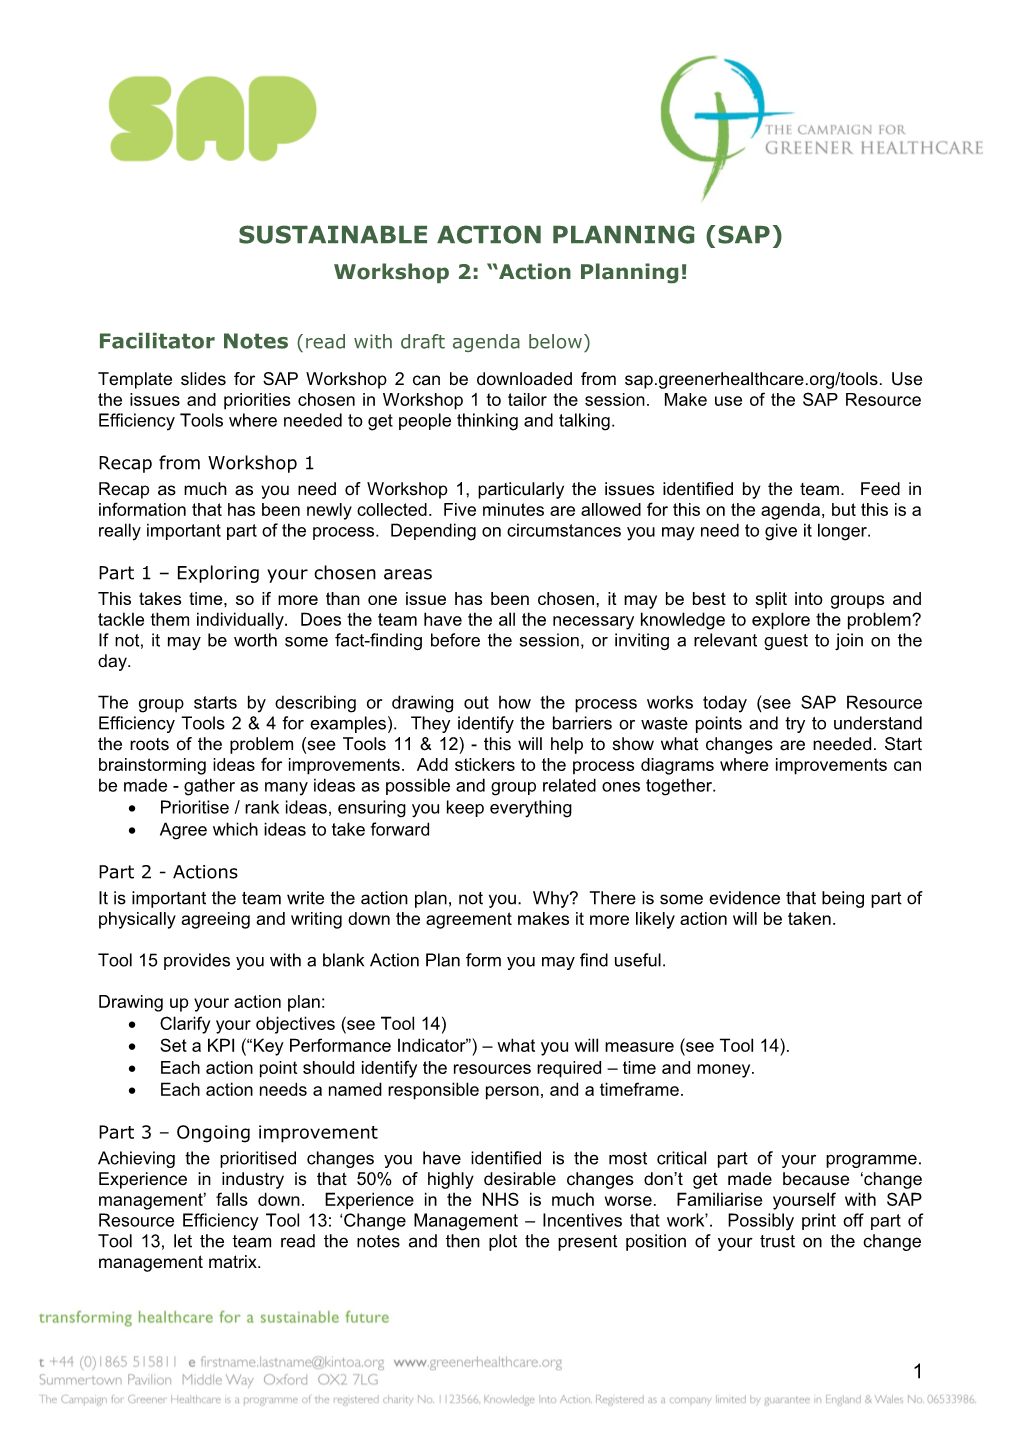 SAP Workshop 2 Facilitator Notes (Updated 28.4.2010)